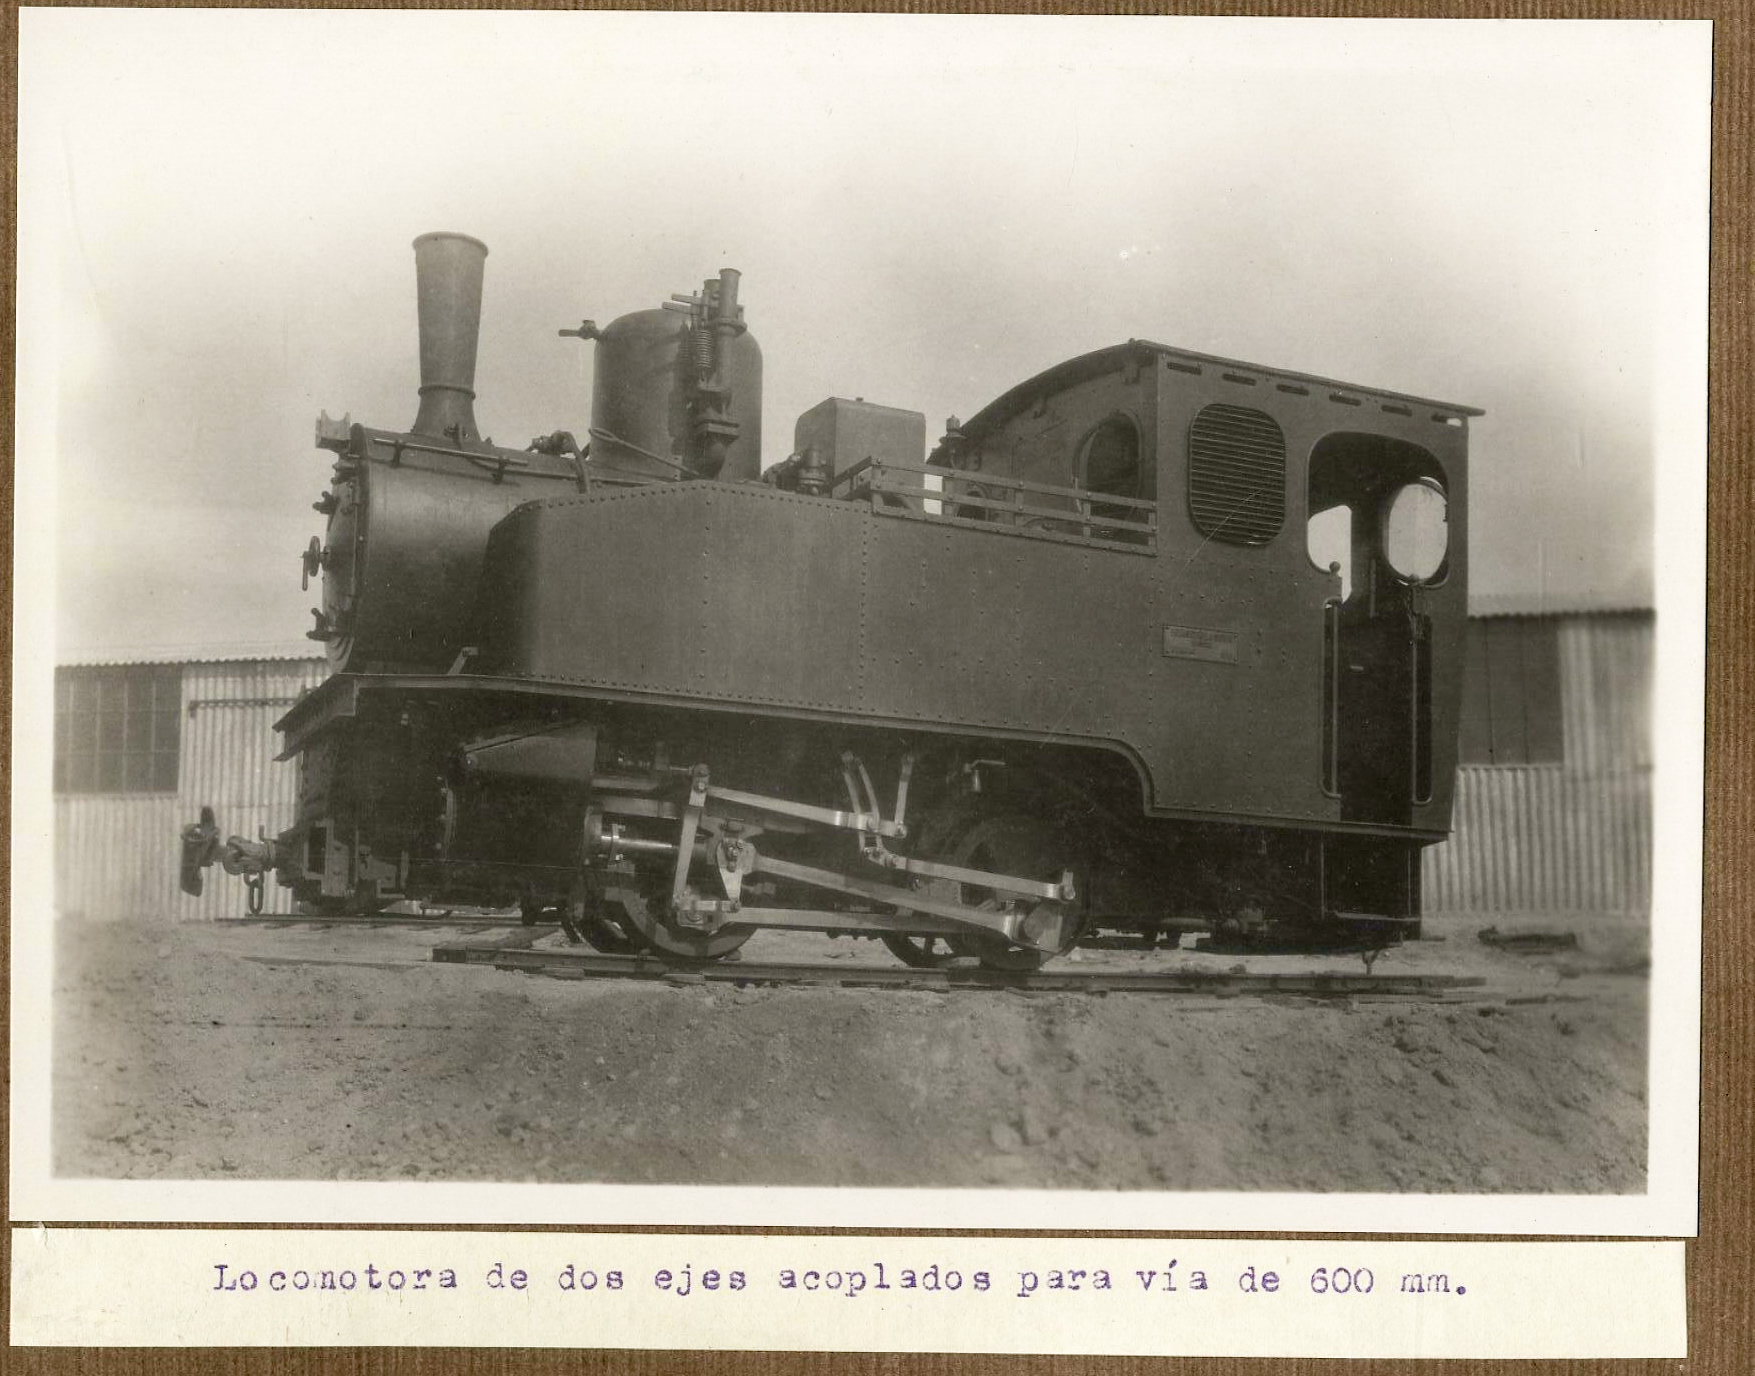 Locomotora de dos ejes acoplados para vía de 600 mm., demostración experimental de los ingenieros del ejército, 1922-1923